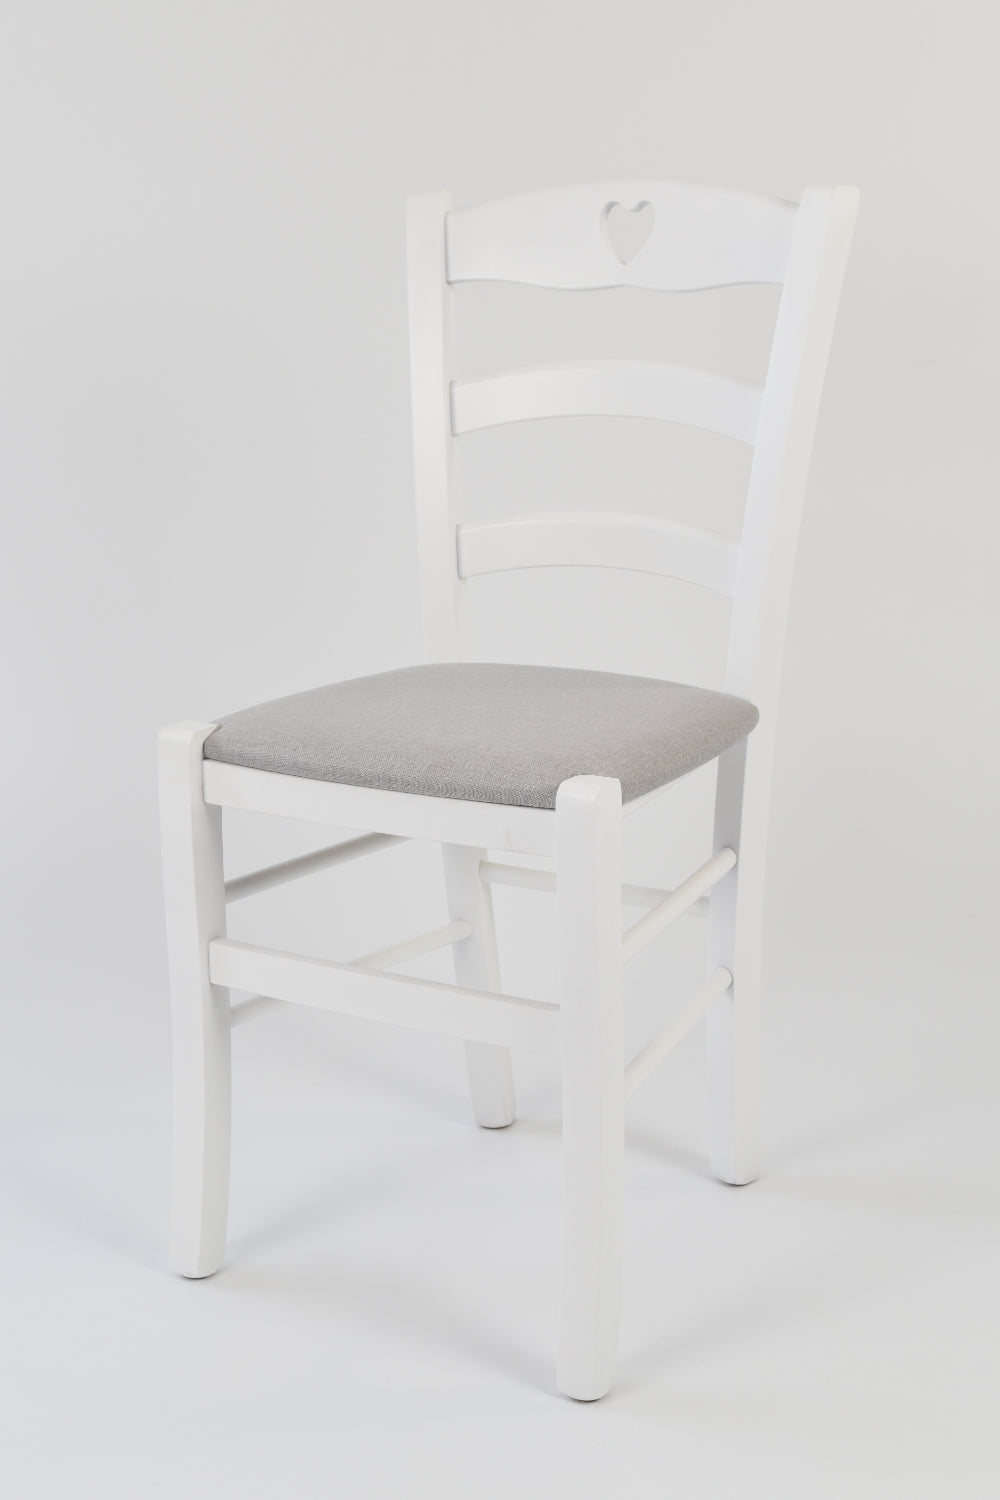 Tommychairs - Set 4 sillas de Cocina y Comedor Cuore, Estructura en Madera de Haya barnizada Color Blanco y Asiento tapizado en Tejido Gris Perla